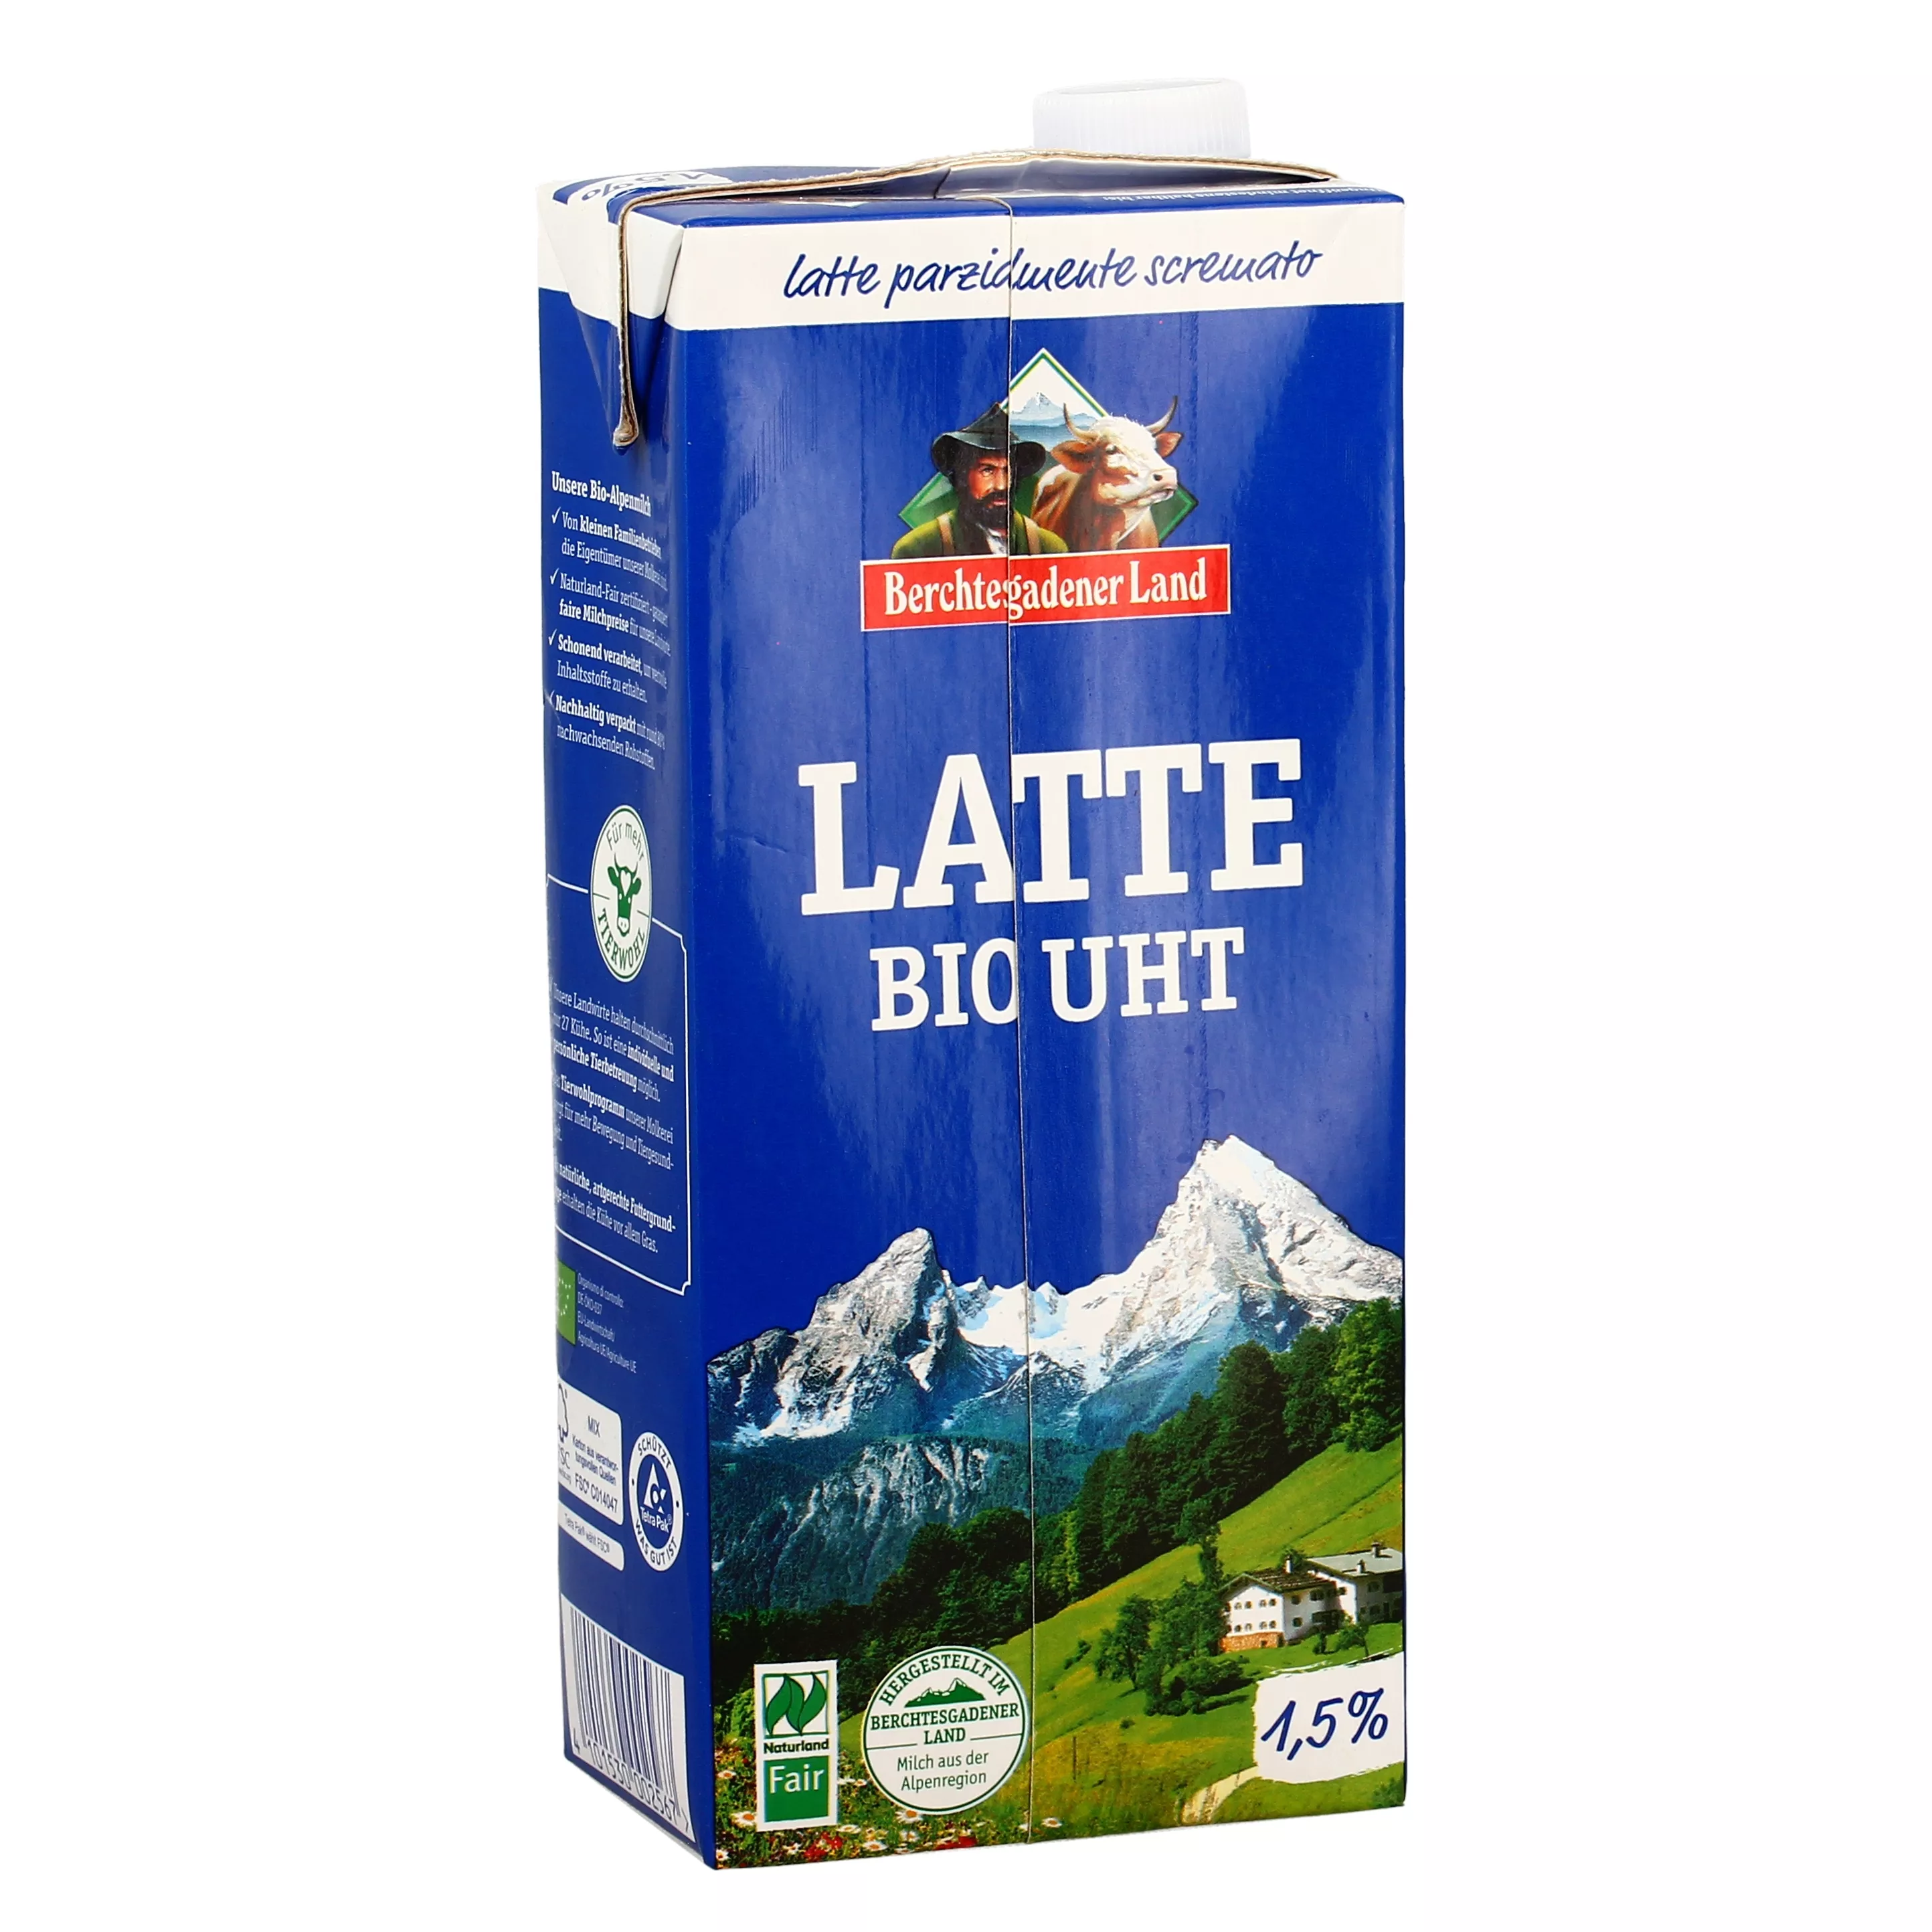 Latte Bio UHT Parzialmente Scremato - Berchtesgadener Land